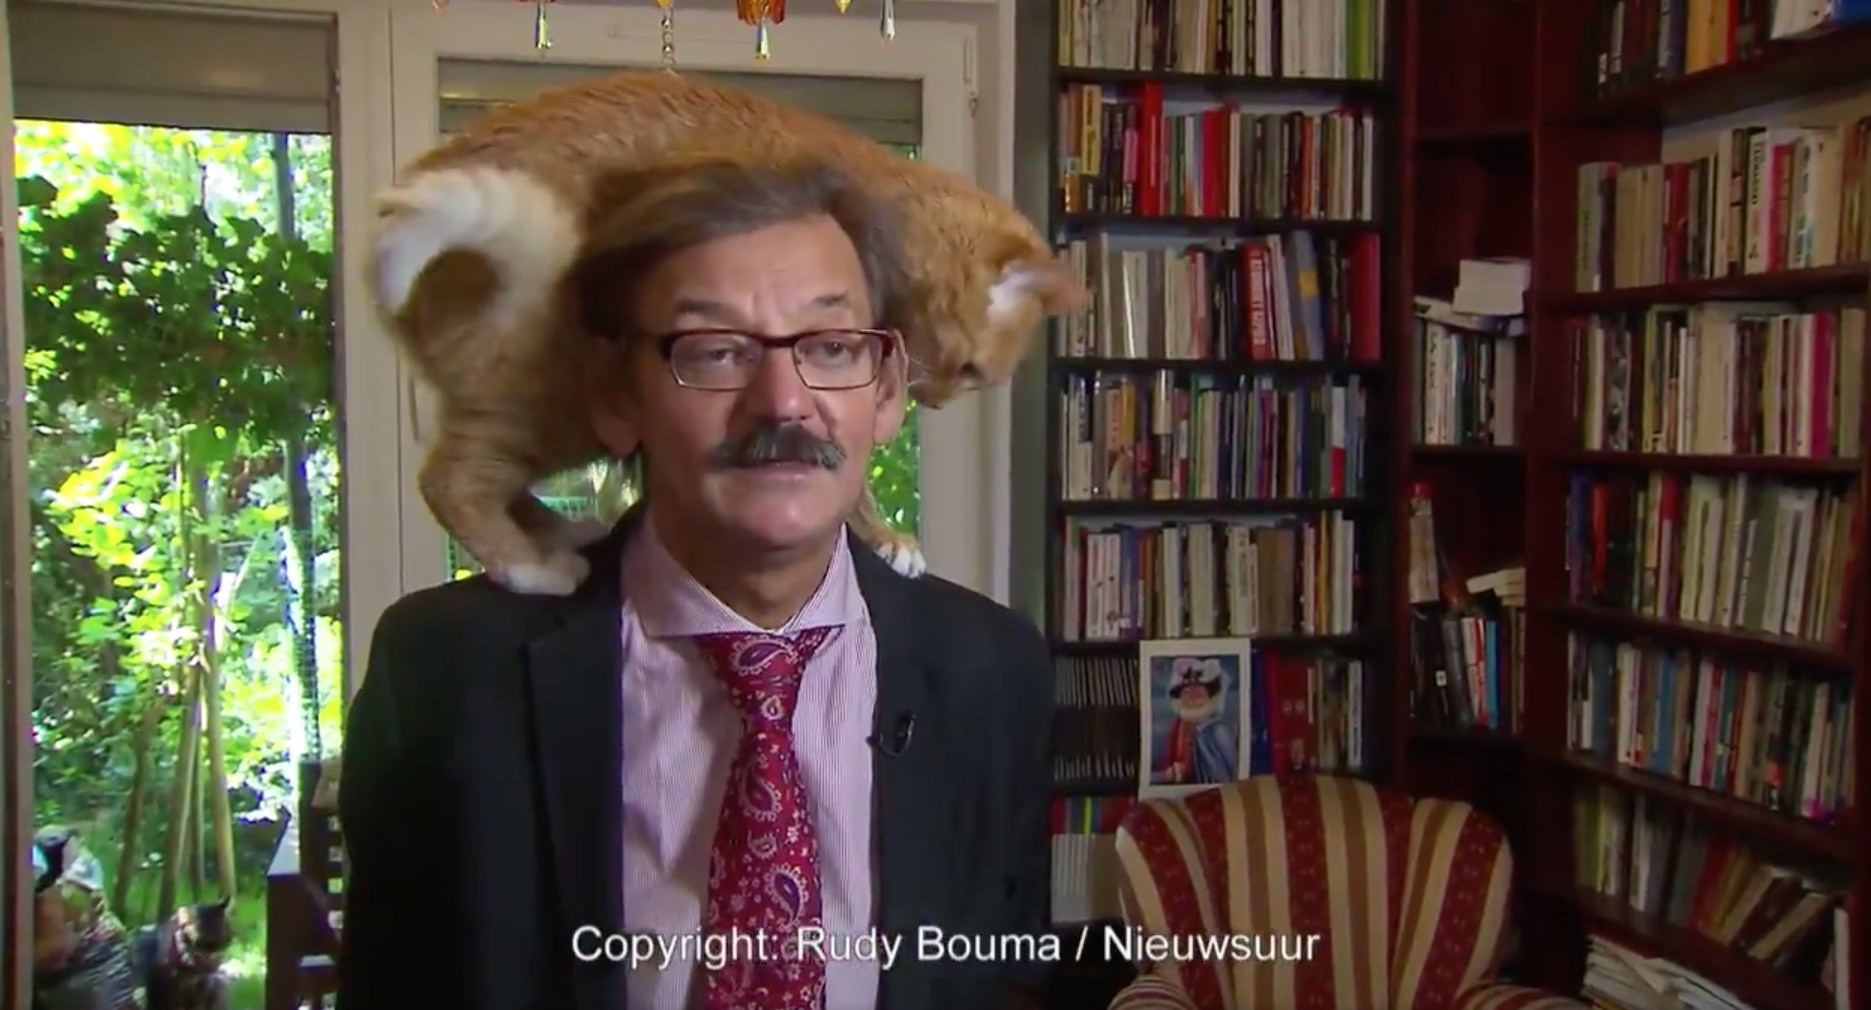 インタビュー中の主の肩に飛び乗る猫、よく見りゃまだいるあと2匹